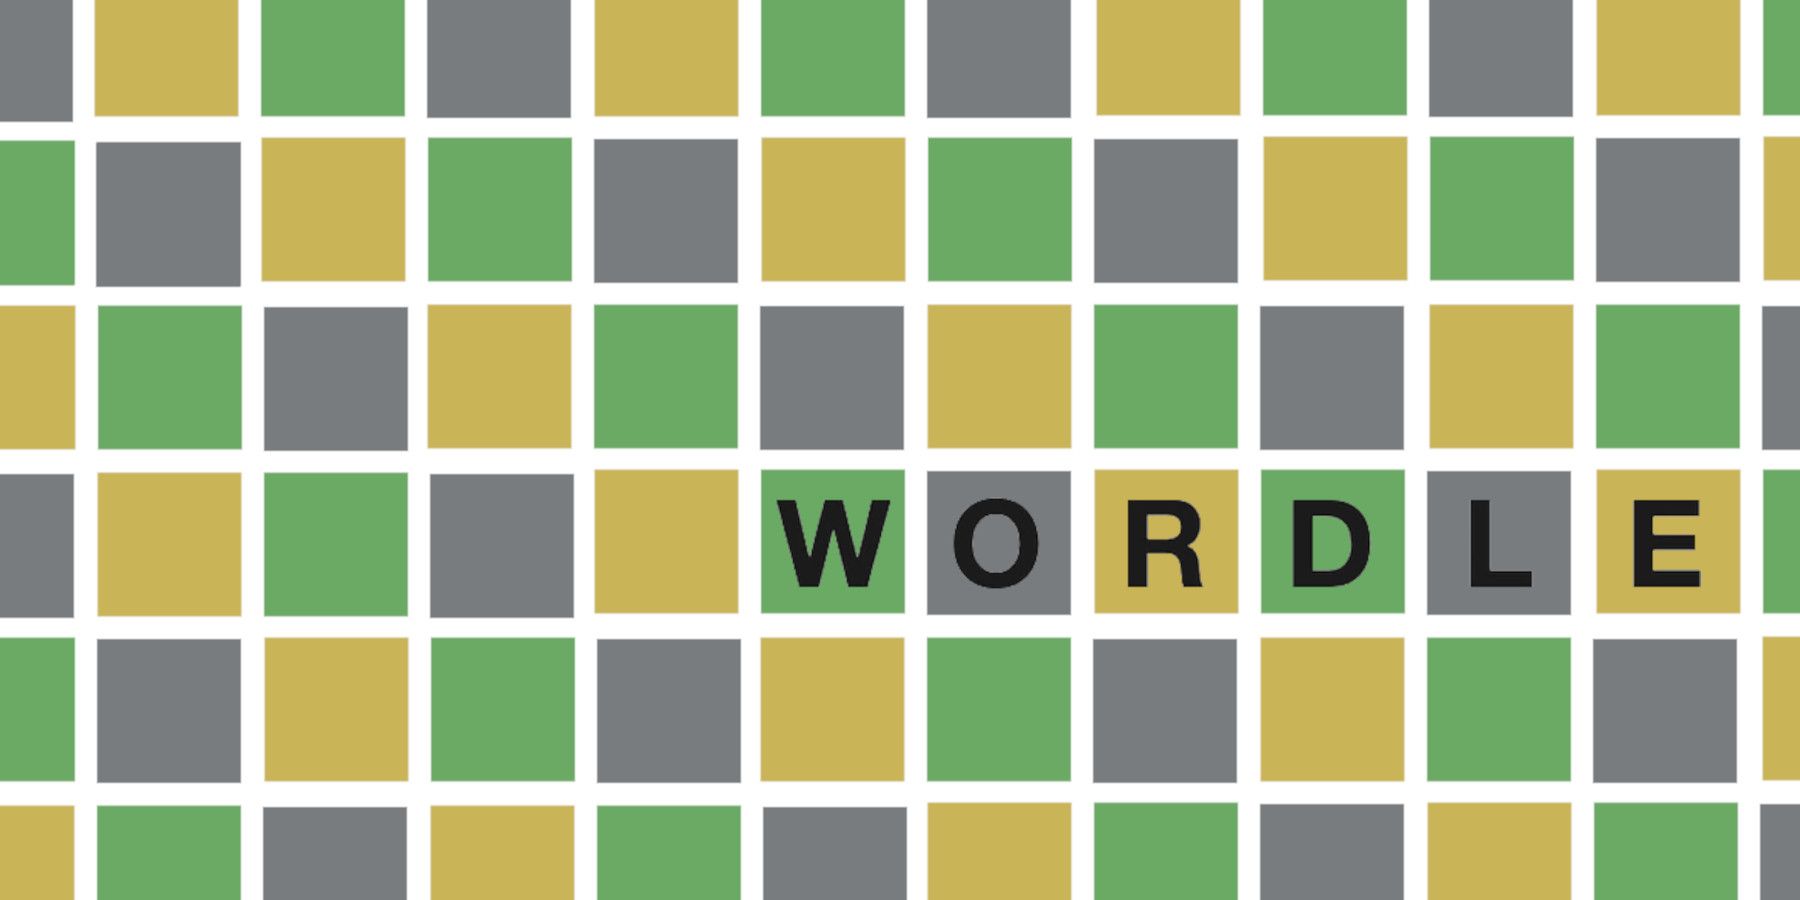 Wordle 237 პასუხი 2022 წლის 11 თებერვალს